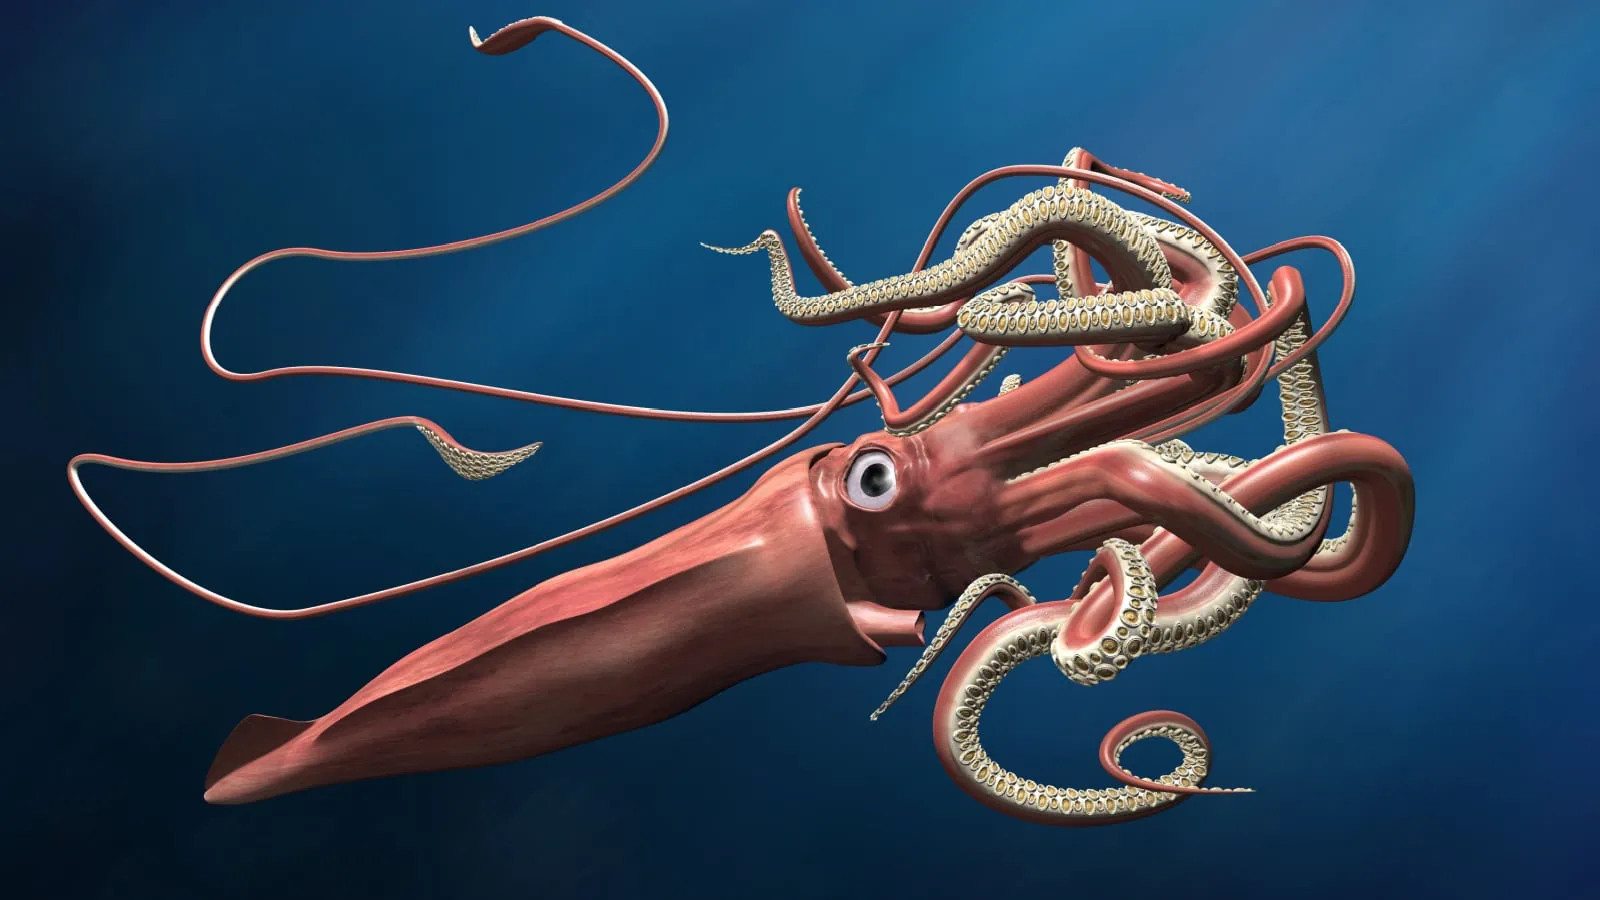 Fascinating giant squids